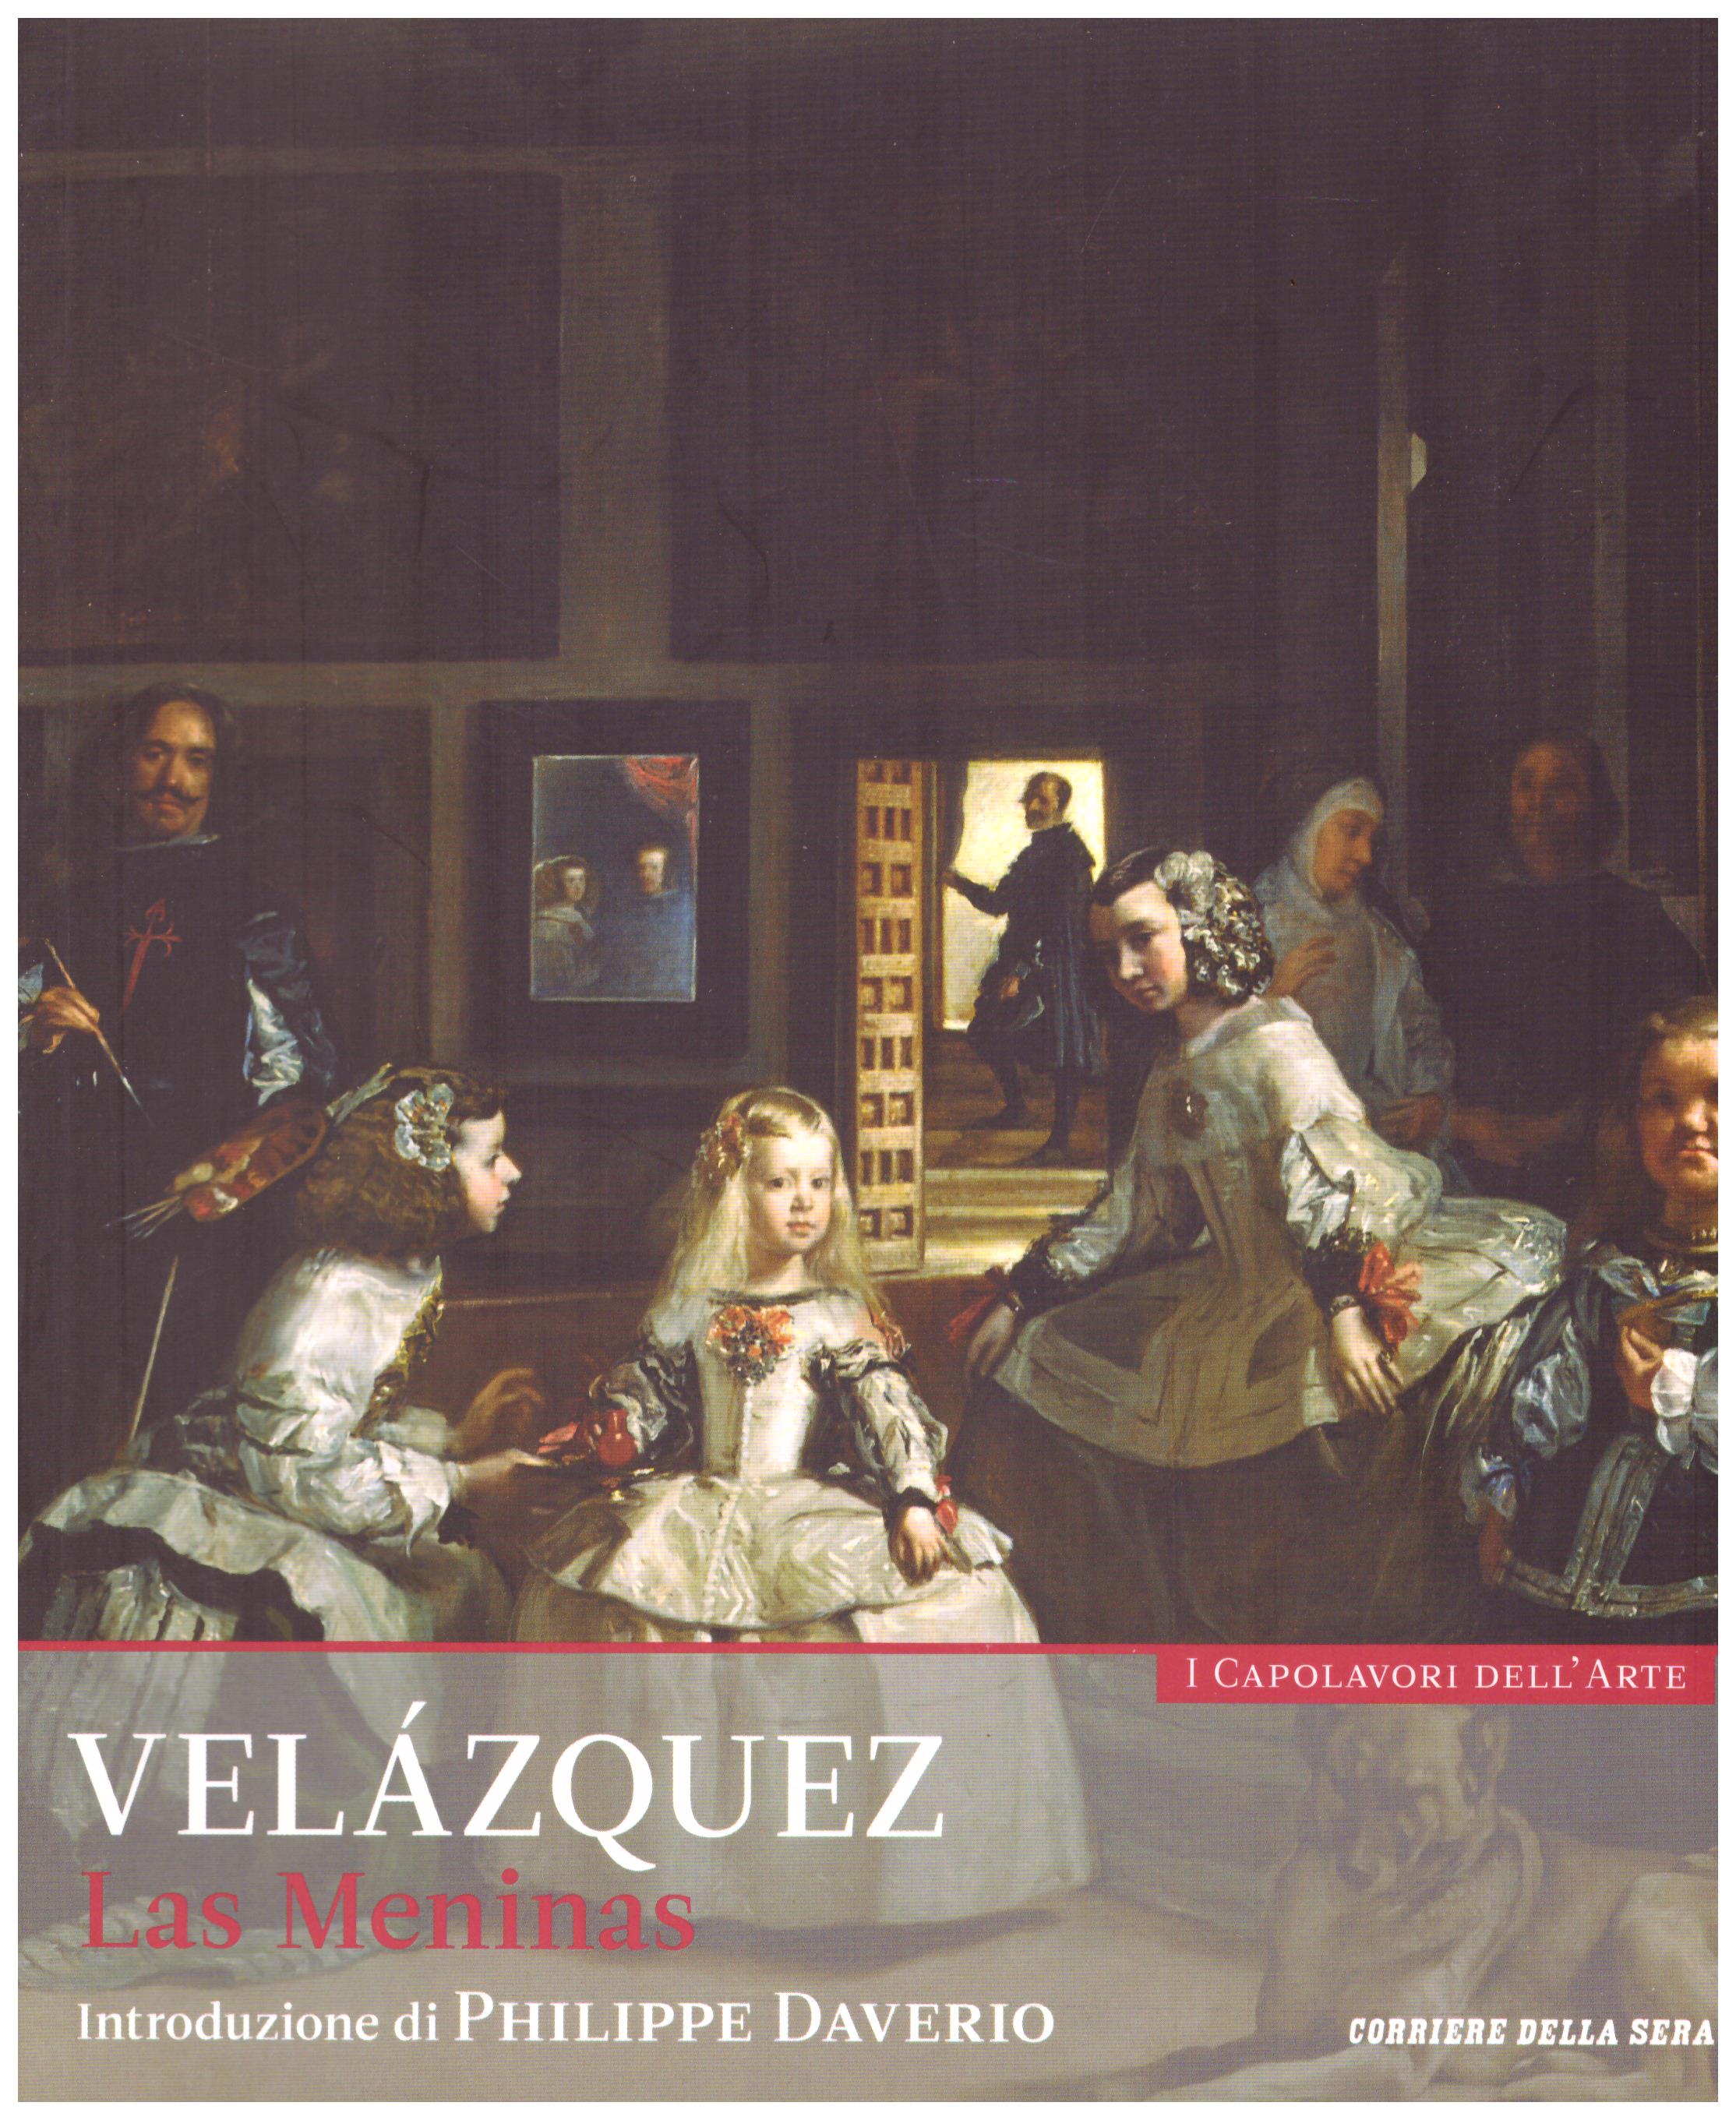 Titolo: I capolavori dell'arte, Velazquez n.14  Autore : AA.VV.   Editore: education,it/corriere della sera, 2015